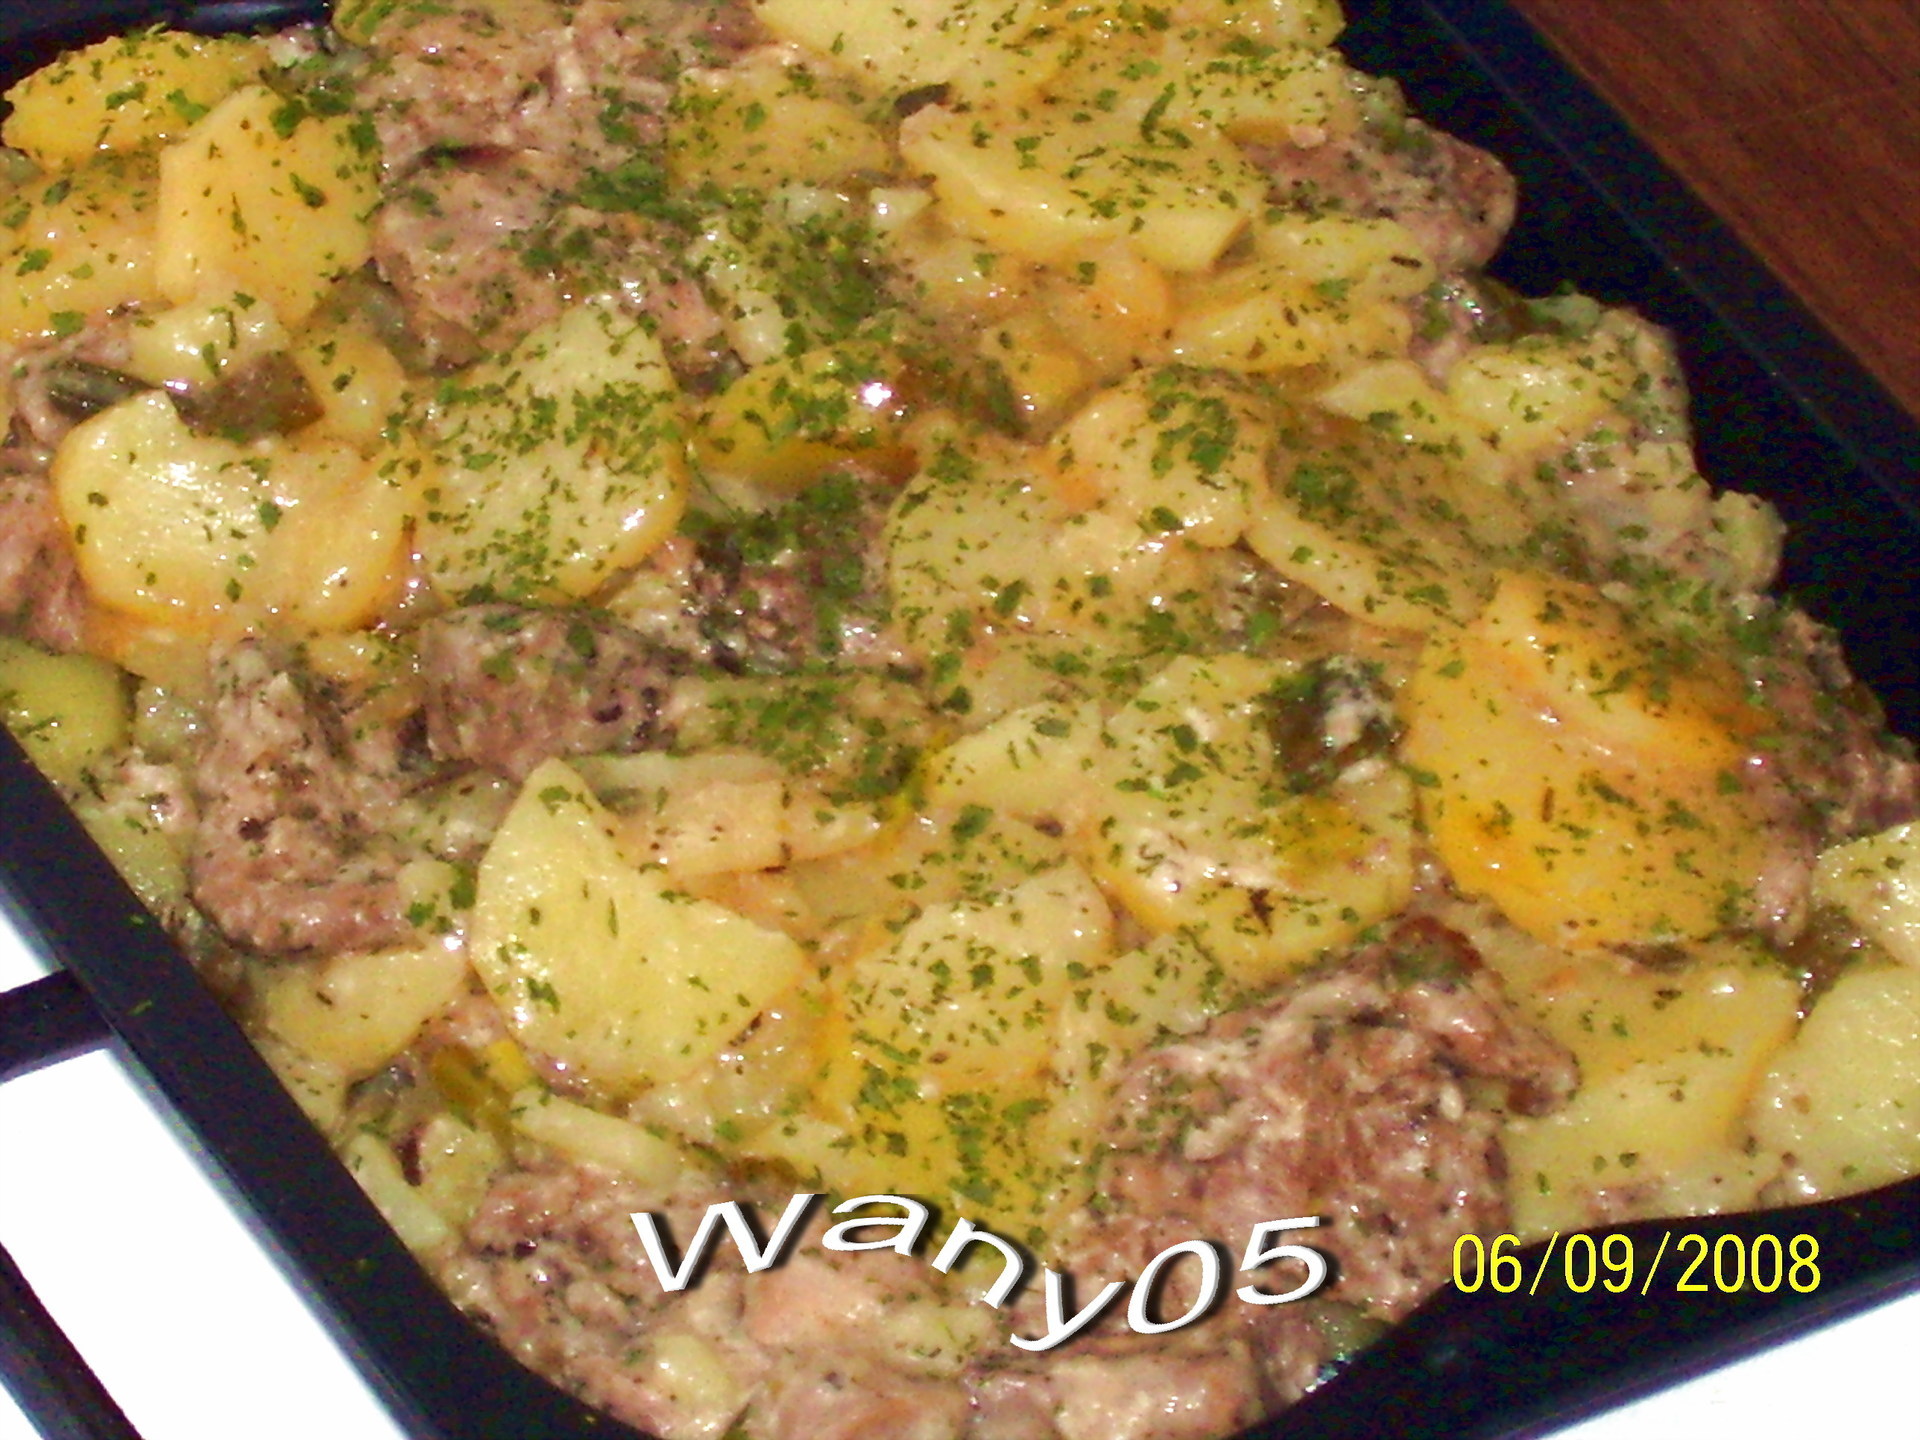 Рецепт запечённого мясо свинины в фольге, с картофель по-деревенски в духовке.